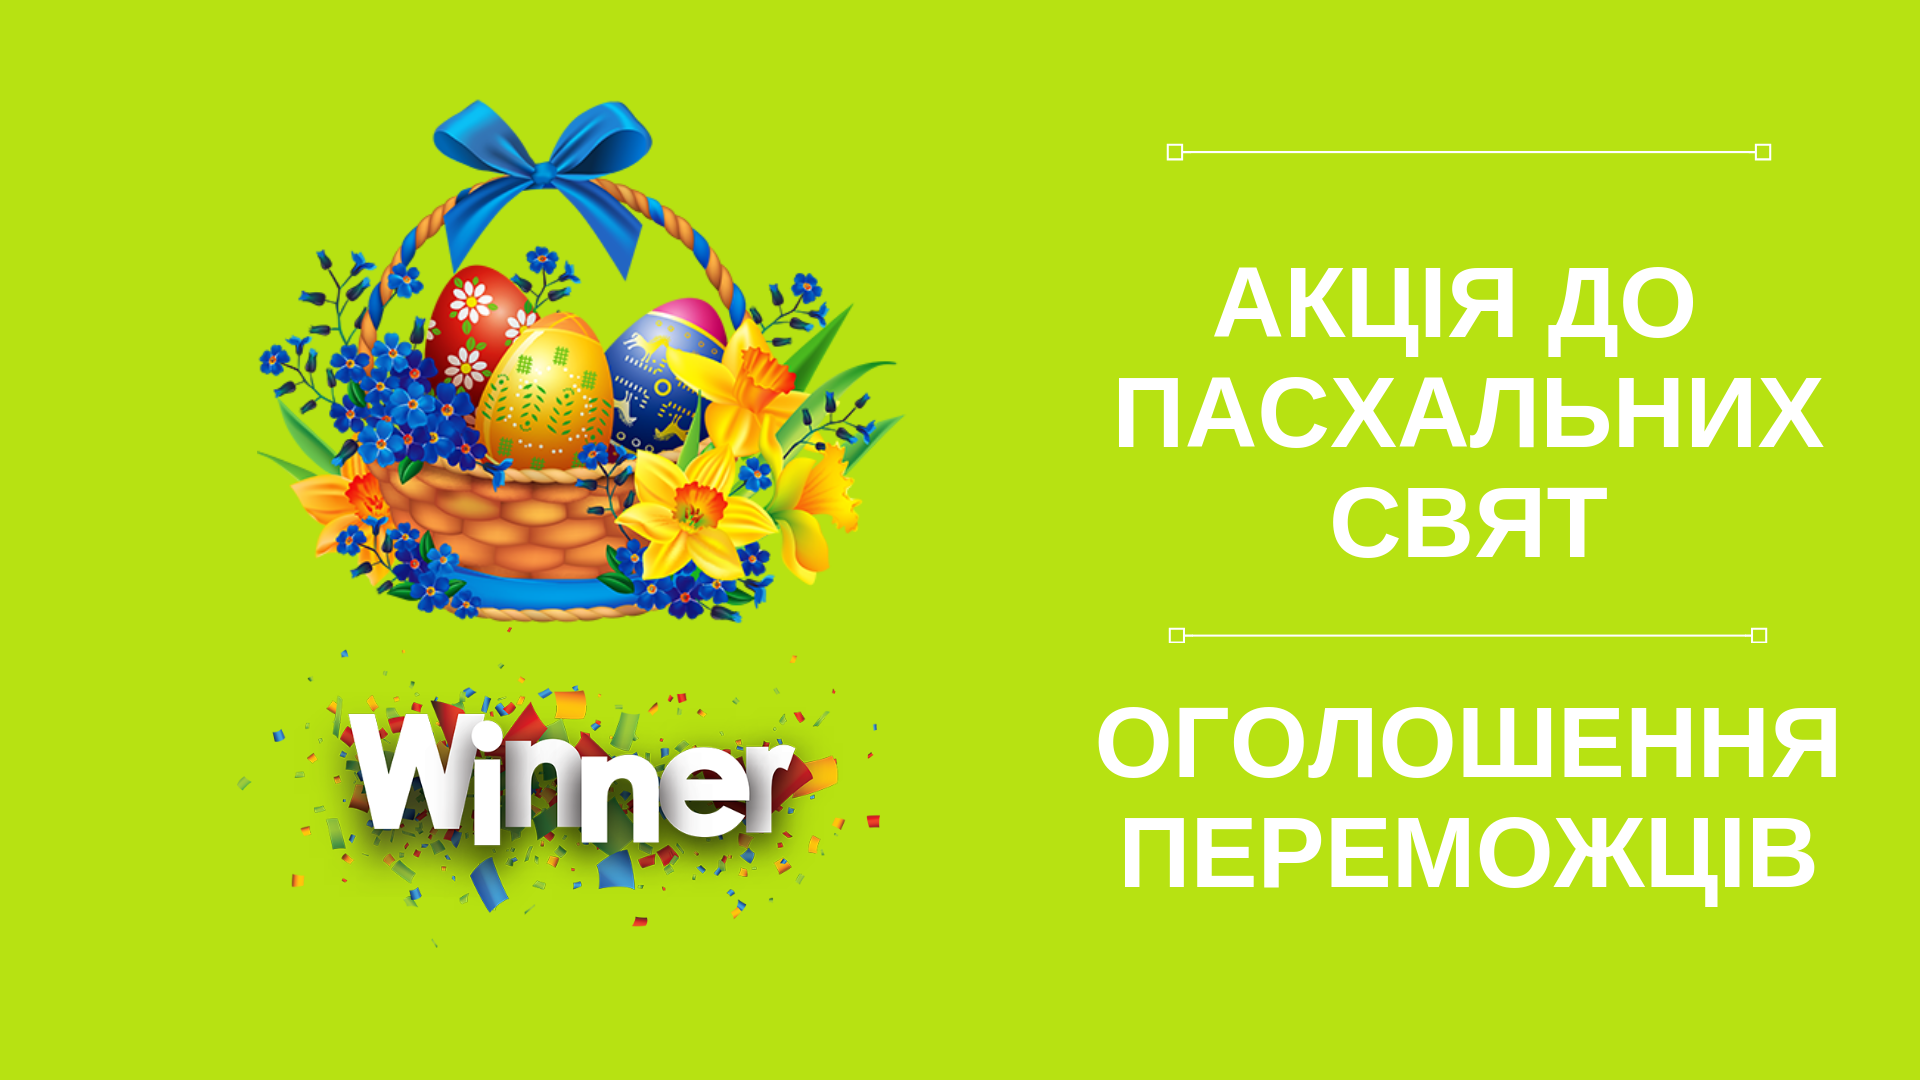 Оголошення фінальних переможців пасхальної акції від ТМ "Дружківська" 